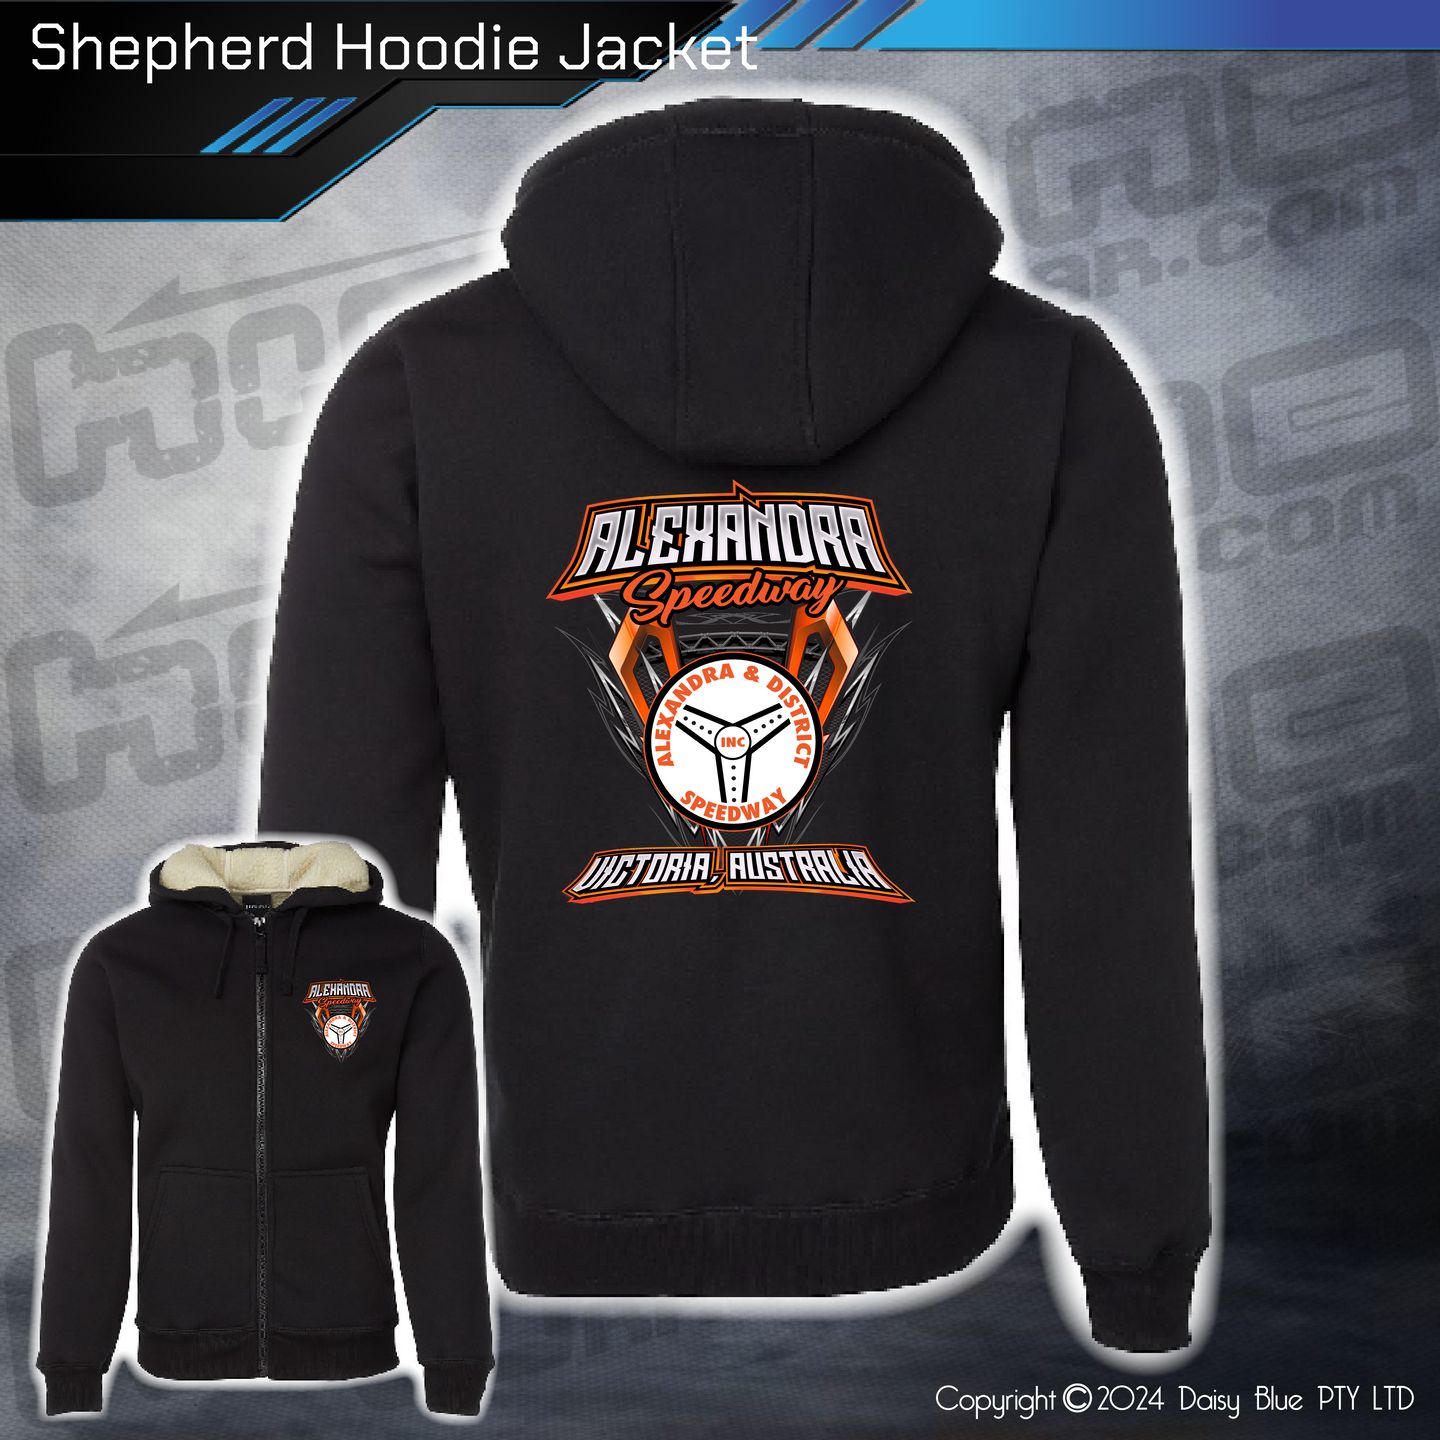 Shepherd Hoodie - Alexandra Speedway